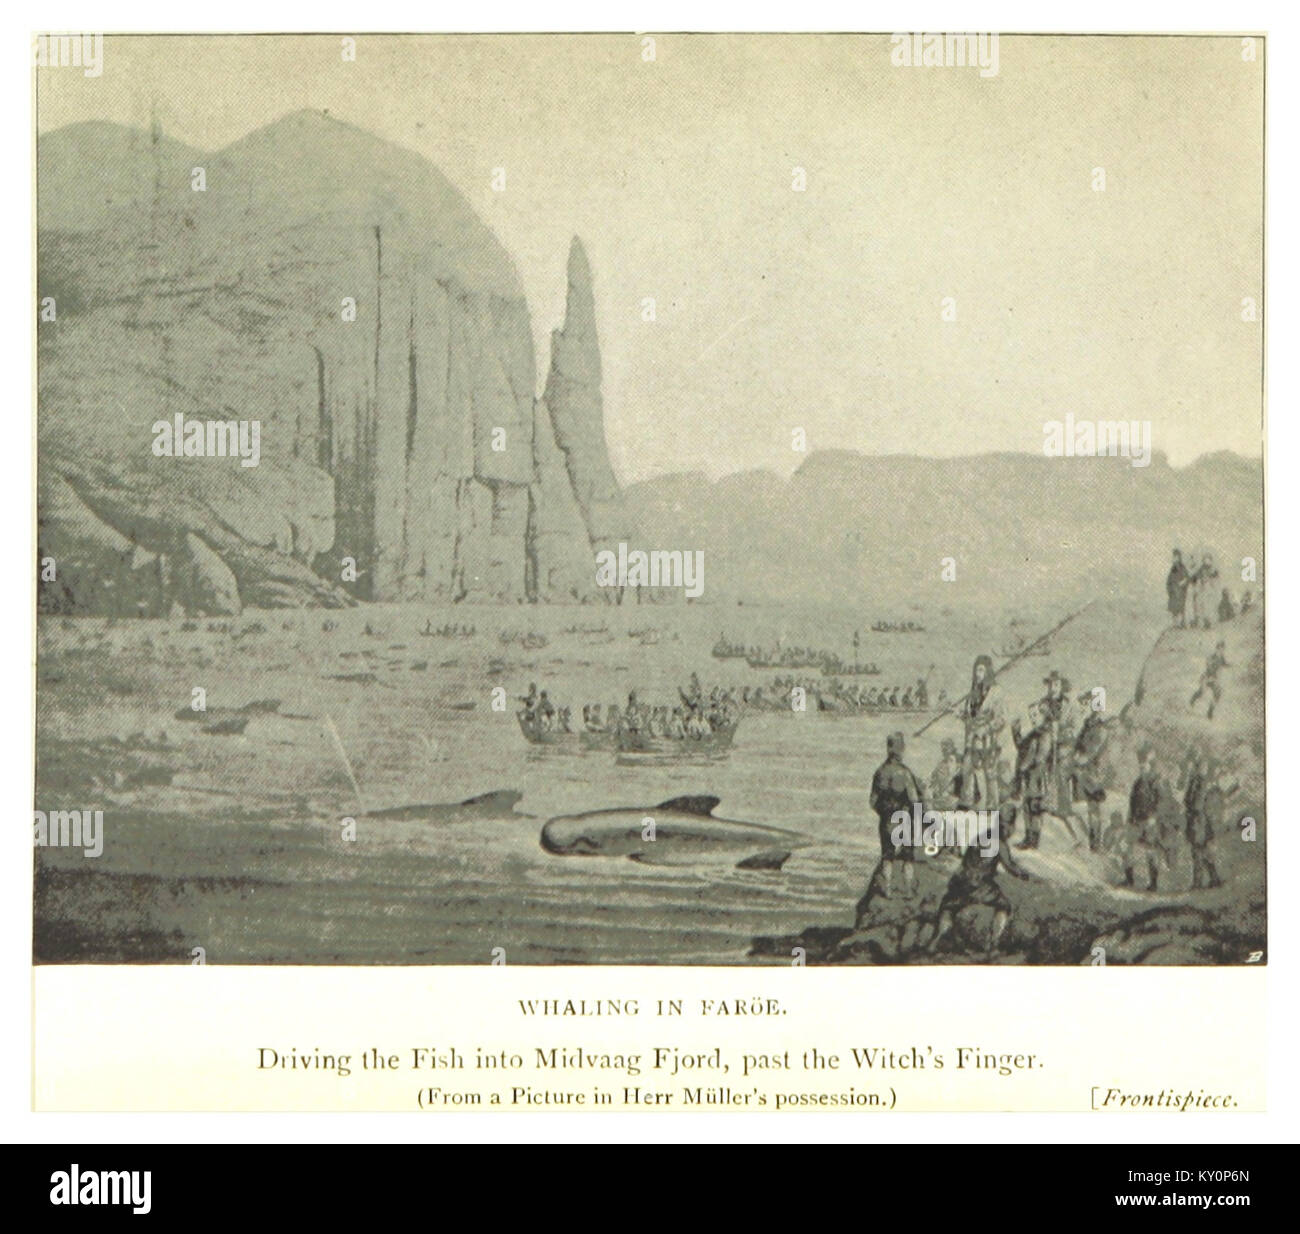 FARÖE(1898) BALENIERA IN FARÖE (Midvaag Fjord) Foto Stock